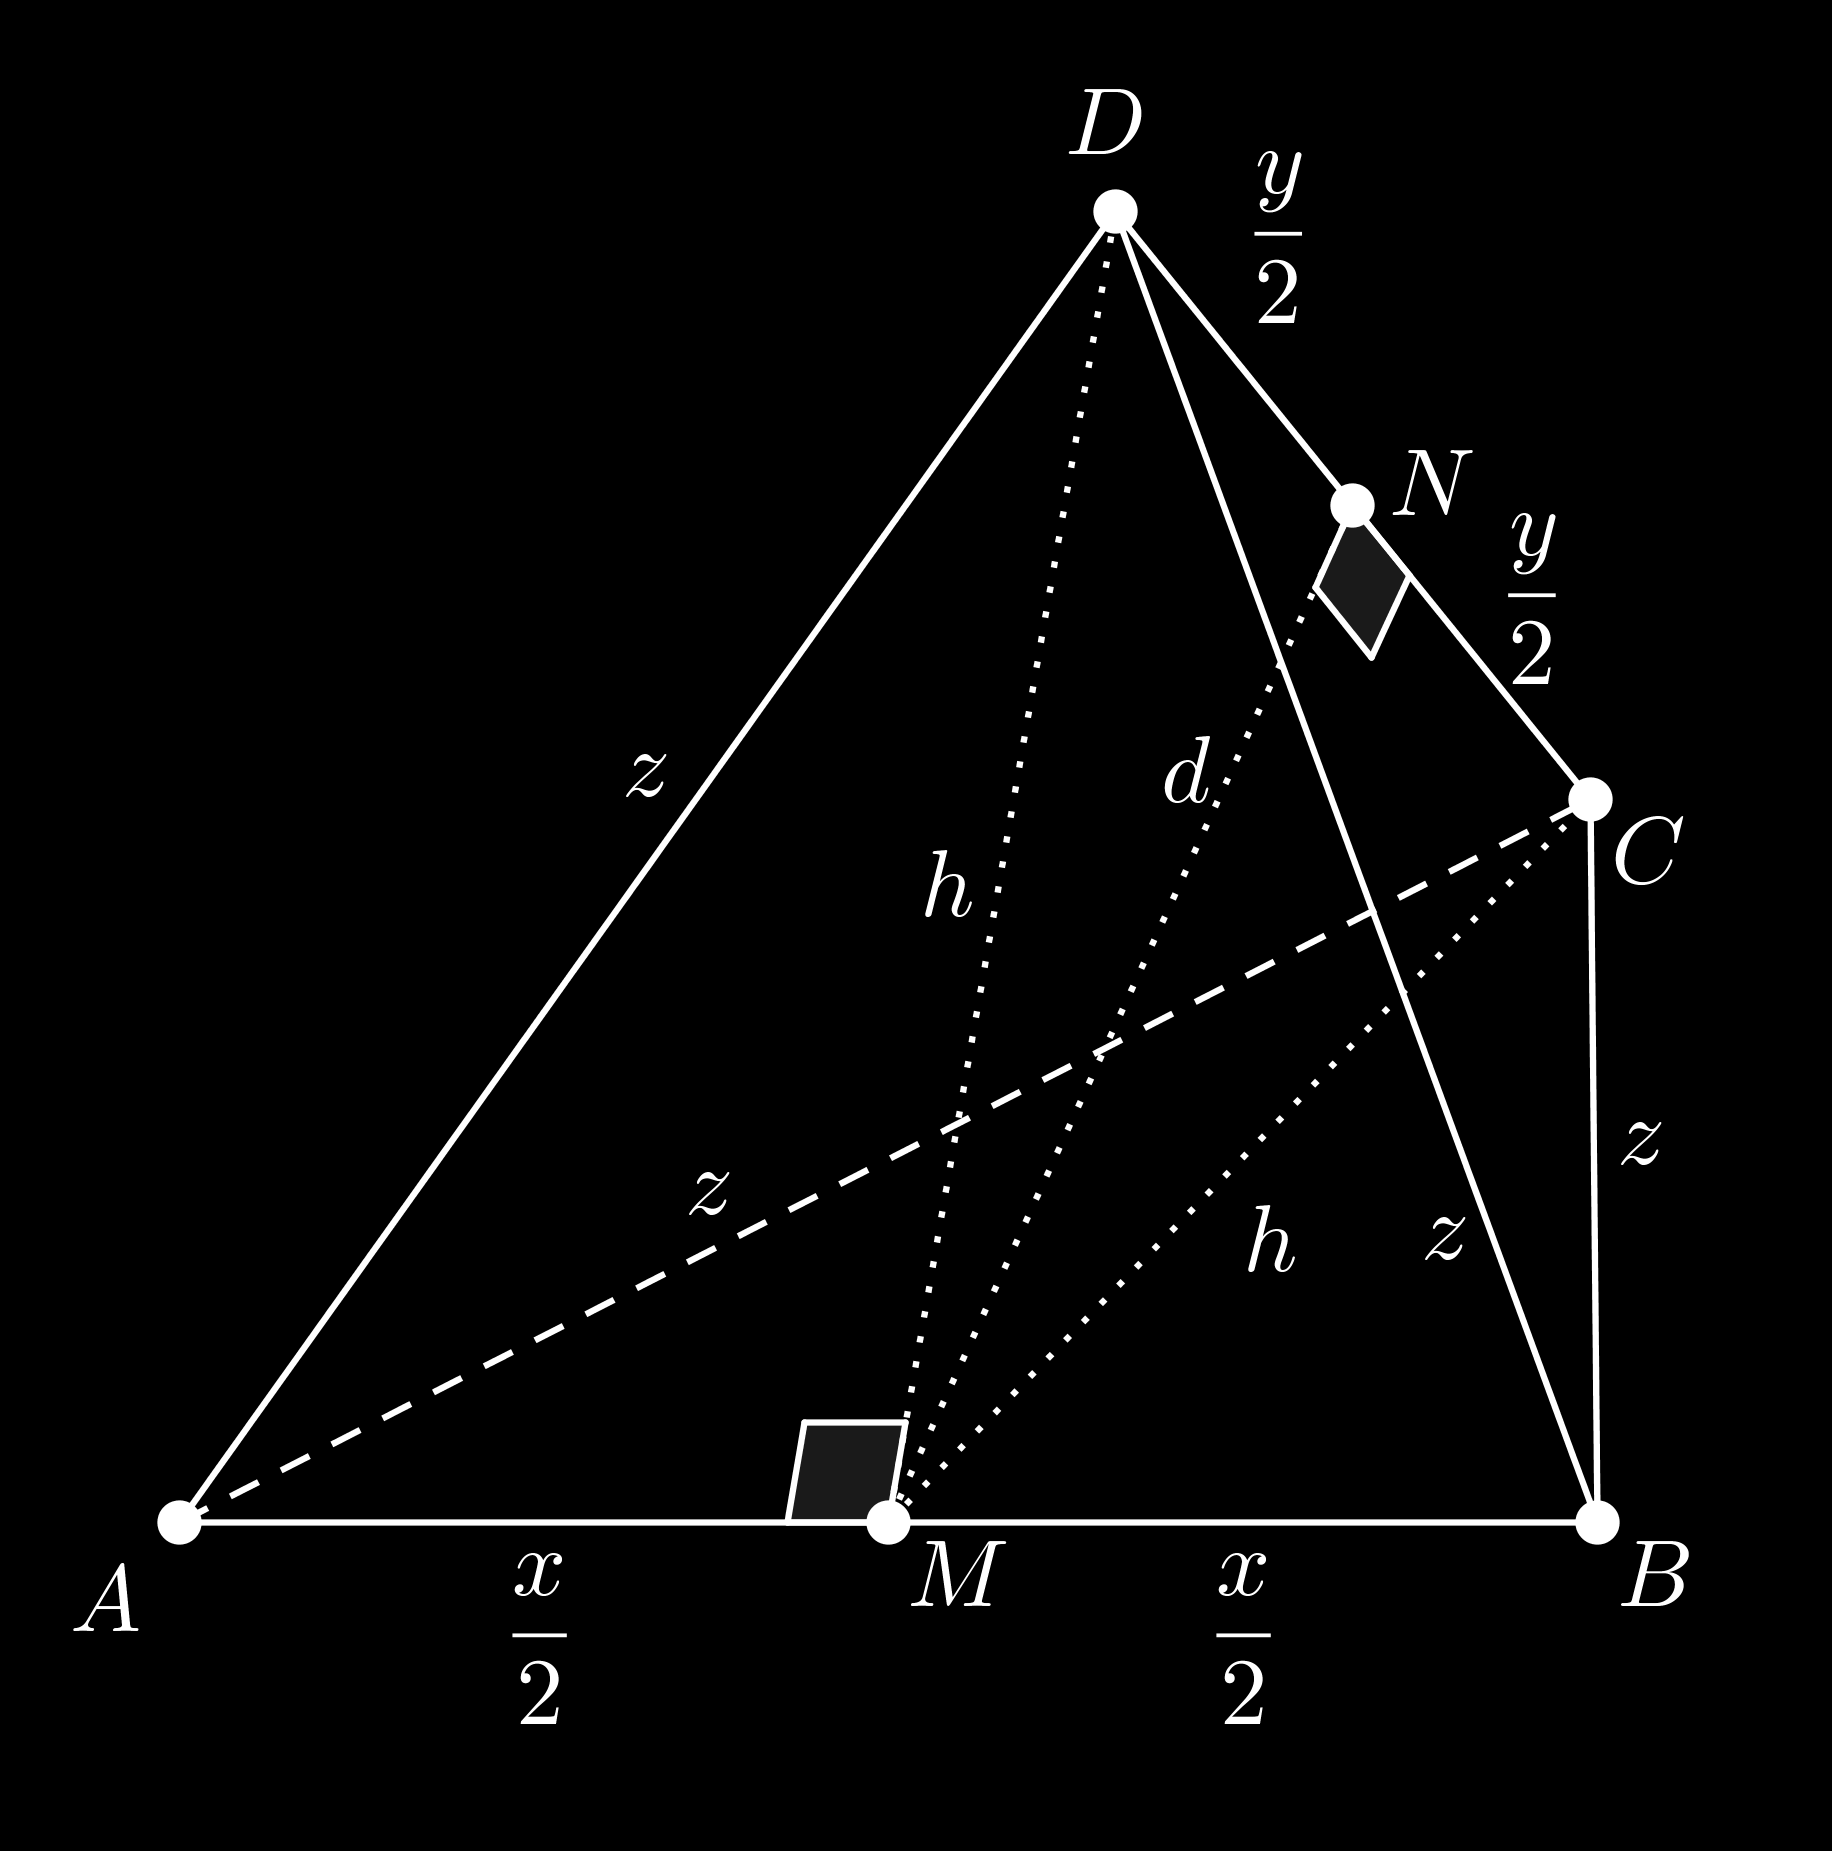 Com isso, a seção do sólido S é a coroa circular entre os círculos de raios x e R,, sua área é dada por Sessão S = πr πx = πr x ). A seção da esfera pelo plano será o círculo de raio CP da figura.